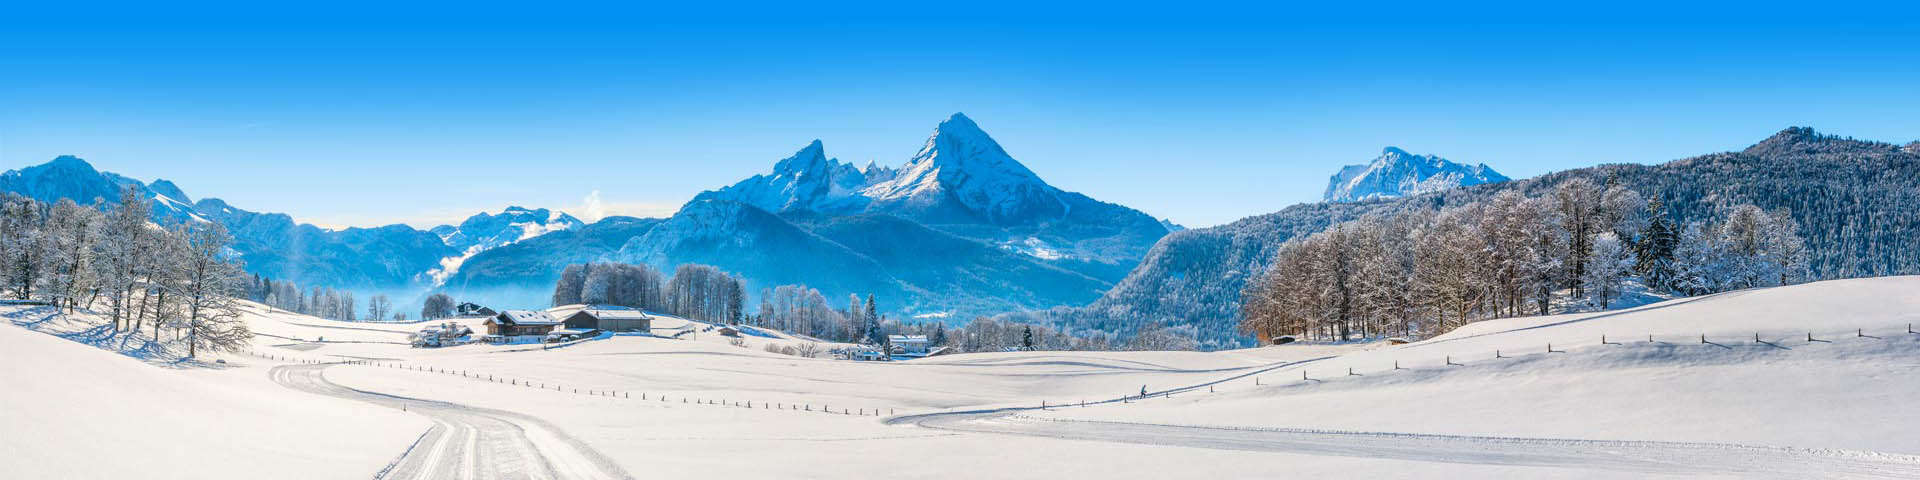 Prachtig besneeuwd landschap in de Duitse bergen